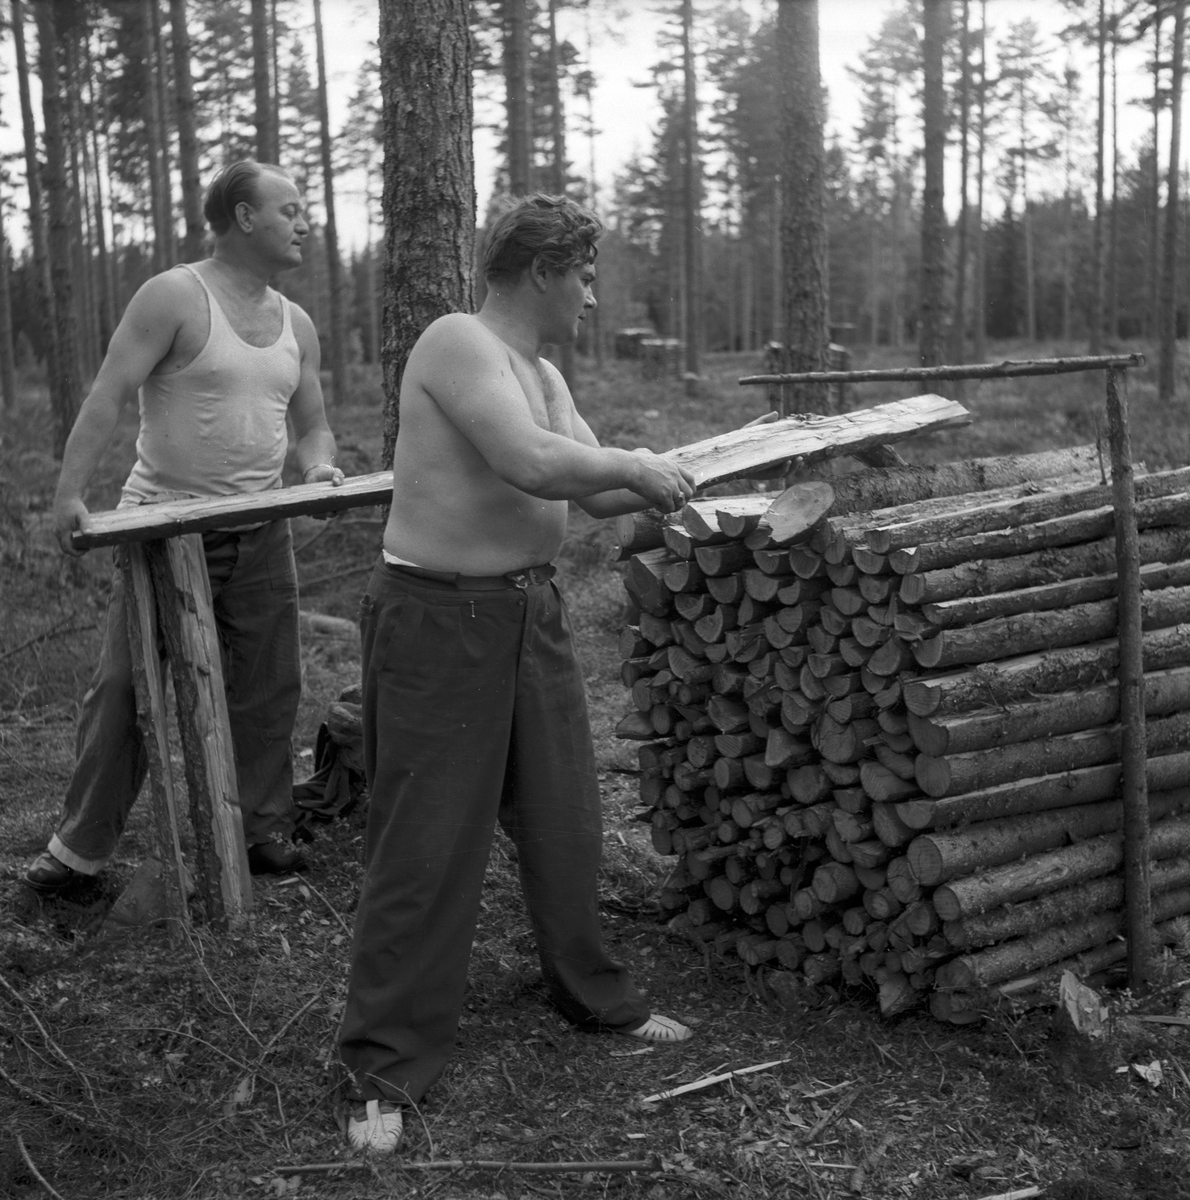 Opersångare Conny Söderström på skogshuggning med Egon Madsen. 8 augusti 1947.